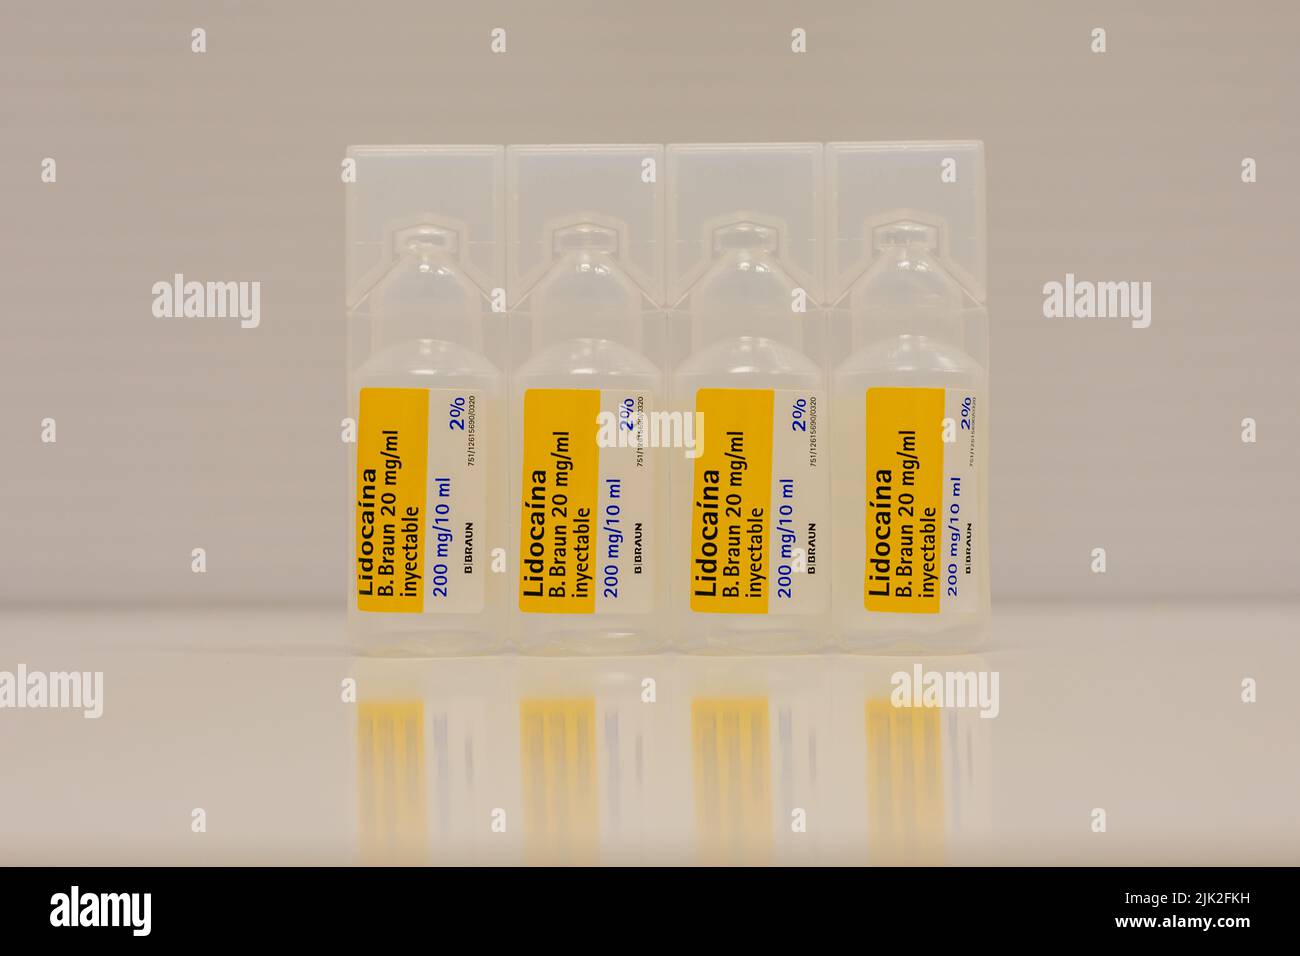 Photo de quatre ampoules en plastique de lidocaïne à 2% à usage médical comme anesthésique local Banque D'Images